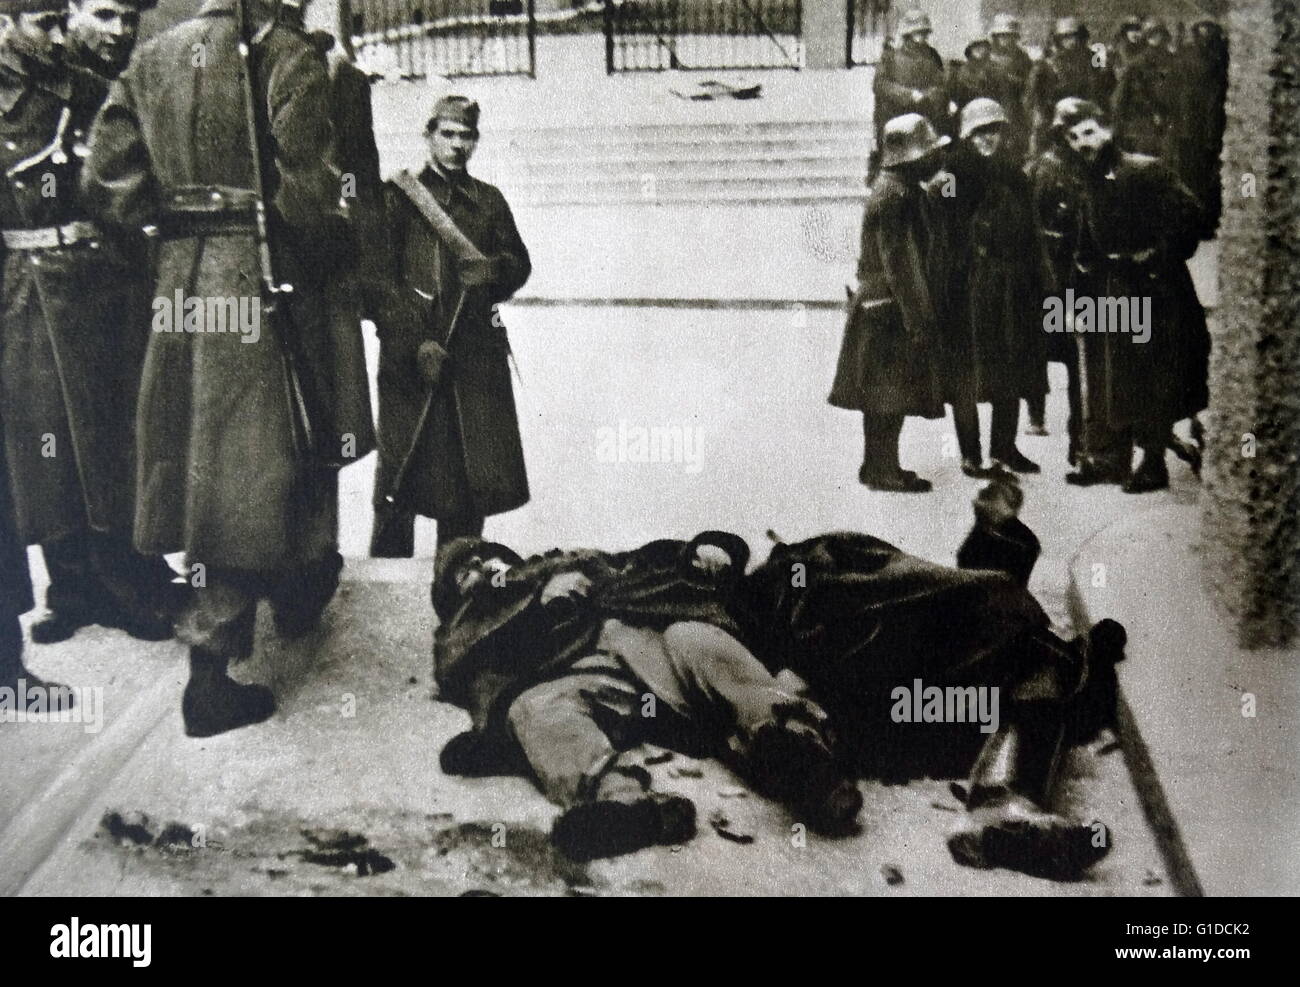 Corps gisant à Vienne pendant la guerre civile autrichienne (Österreichischer'), également connu sous le nom de l'Insurrection de février. Des escarmouches entre conservateurs et socialistes forces antifascistes entre le 12 février et le 16 février 1934 Banque D'Images